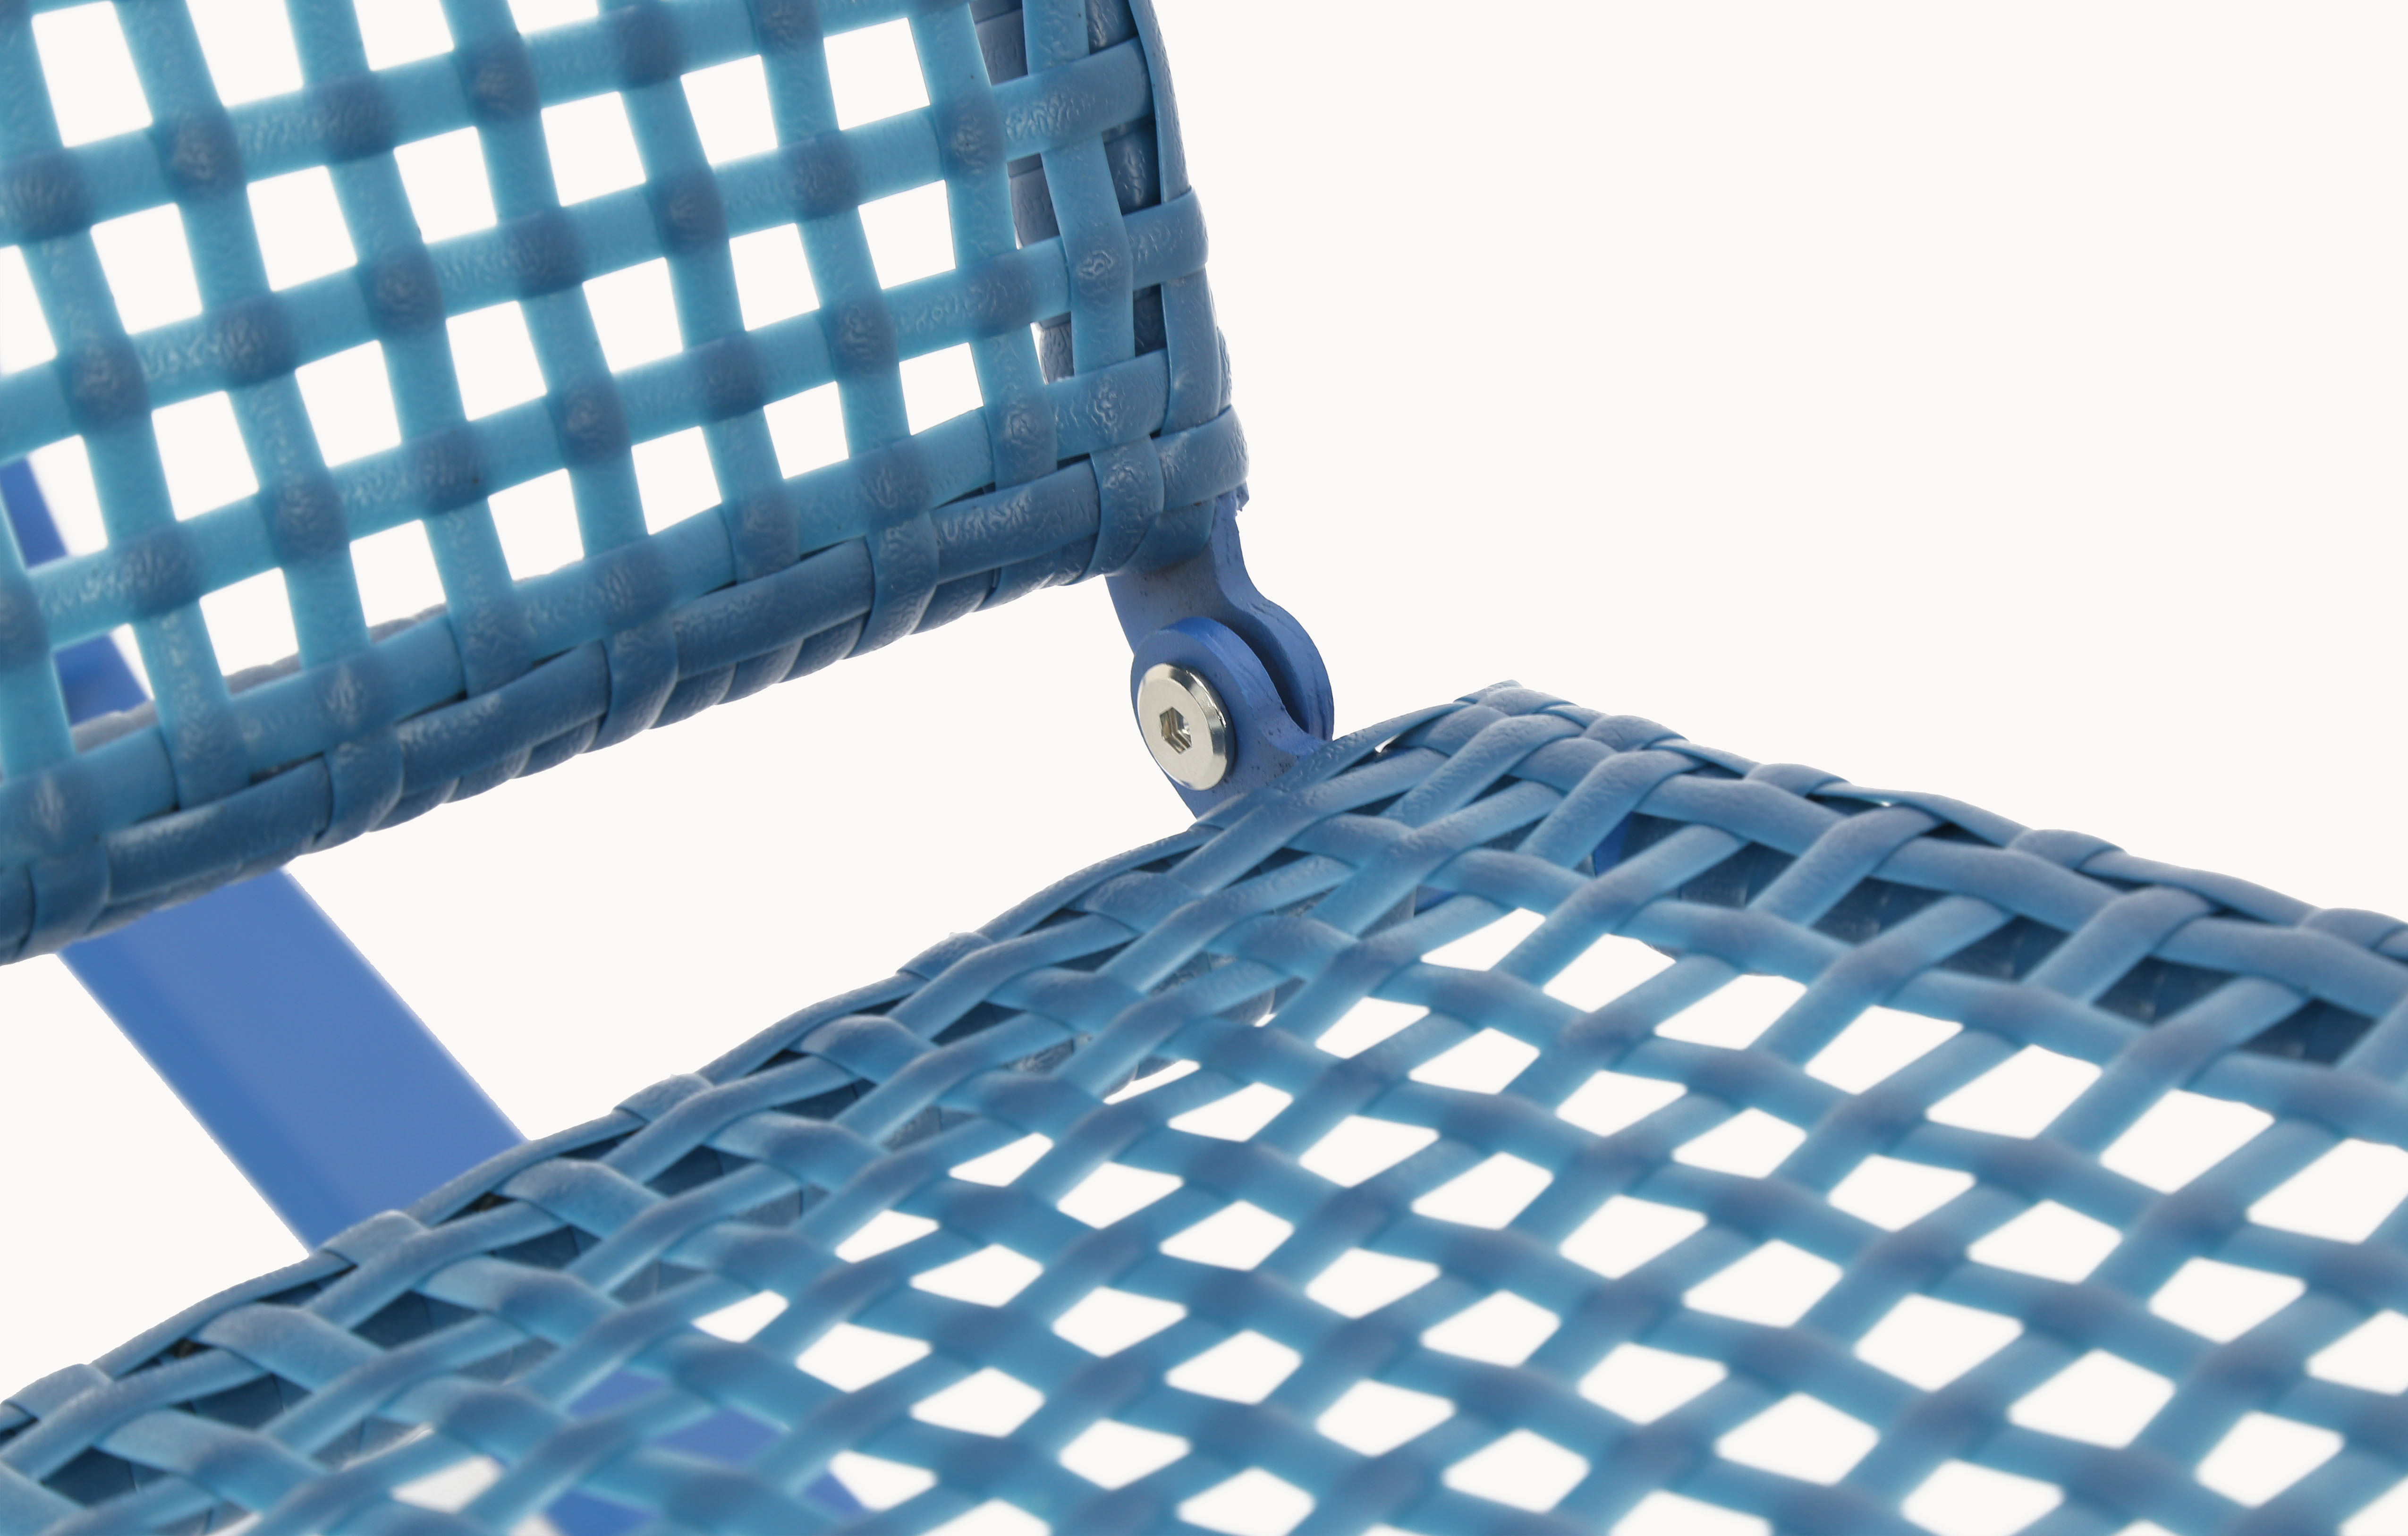 Baner Garden Indoor Outdoor Rocking Lounge Chair Porch Indoor Patio Headrest Furniture, Blue (X62BU) - image 5 of 8